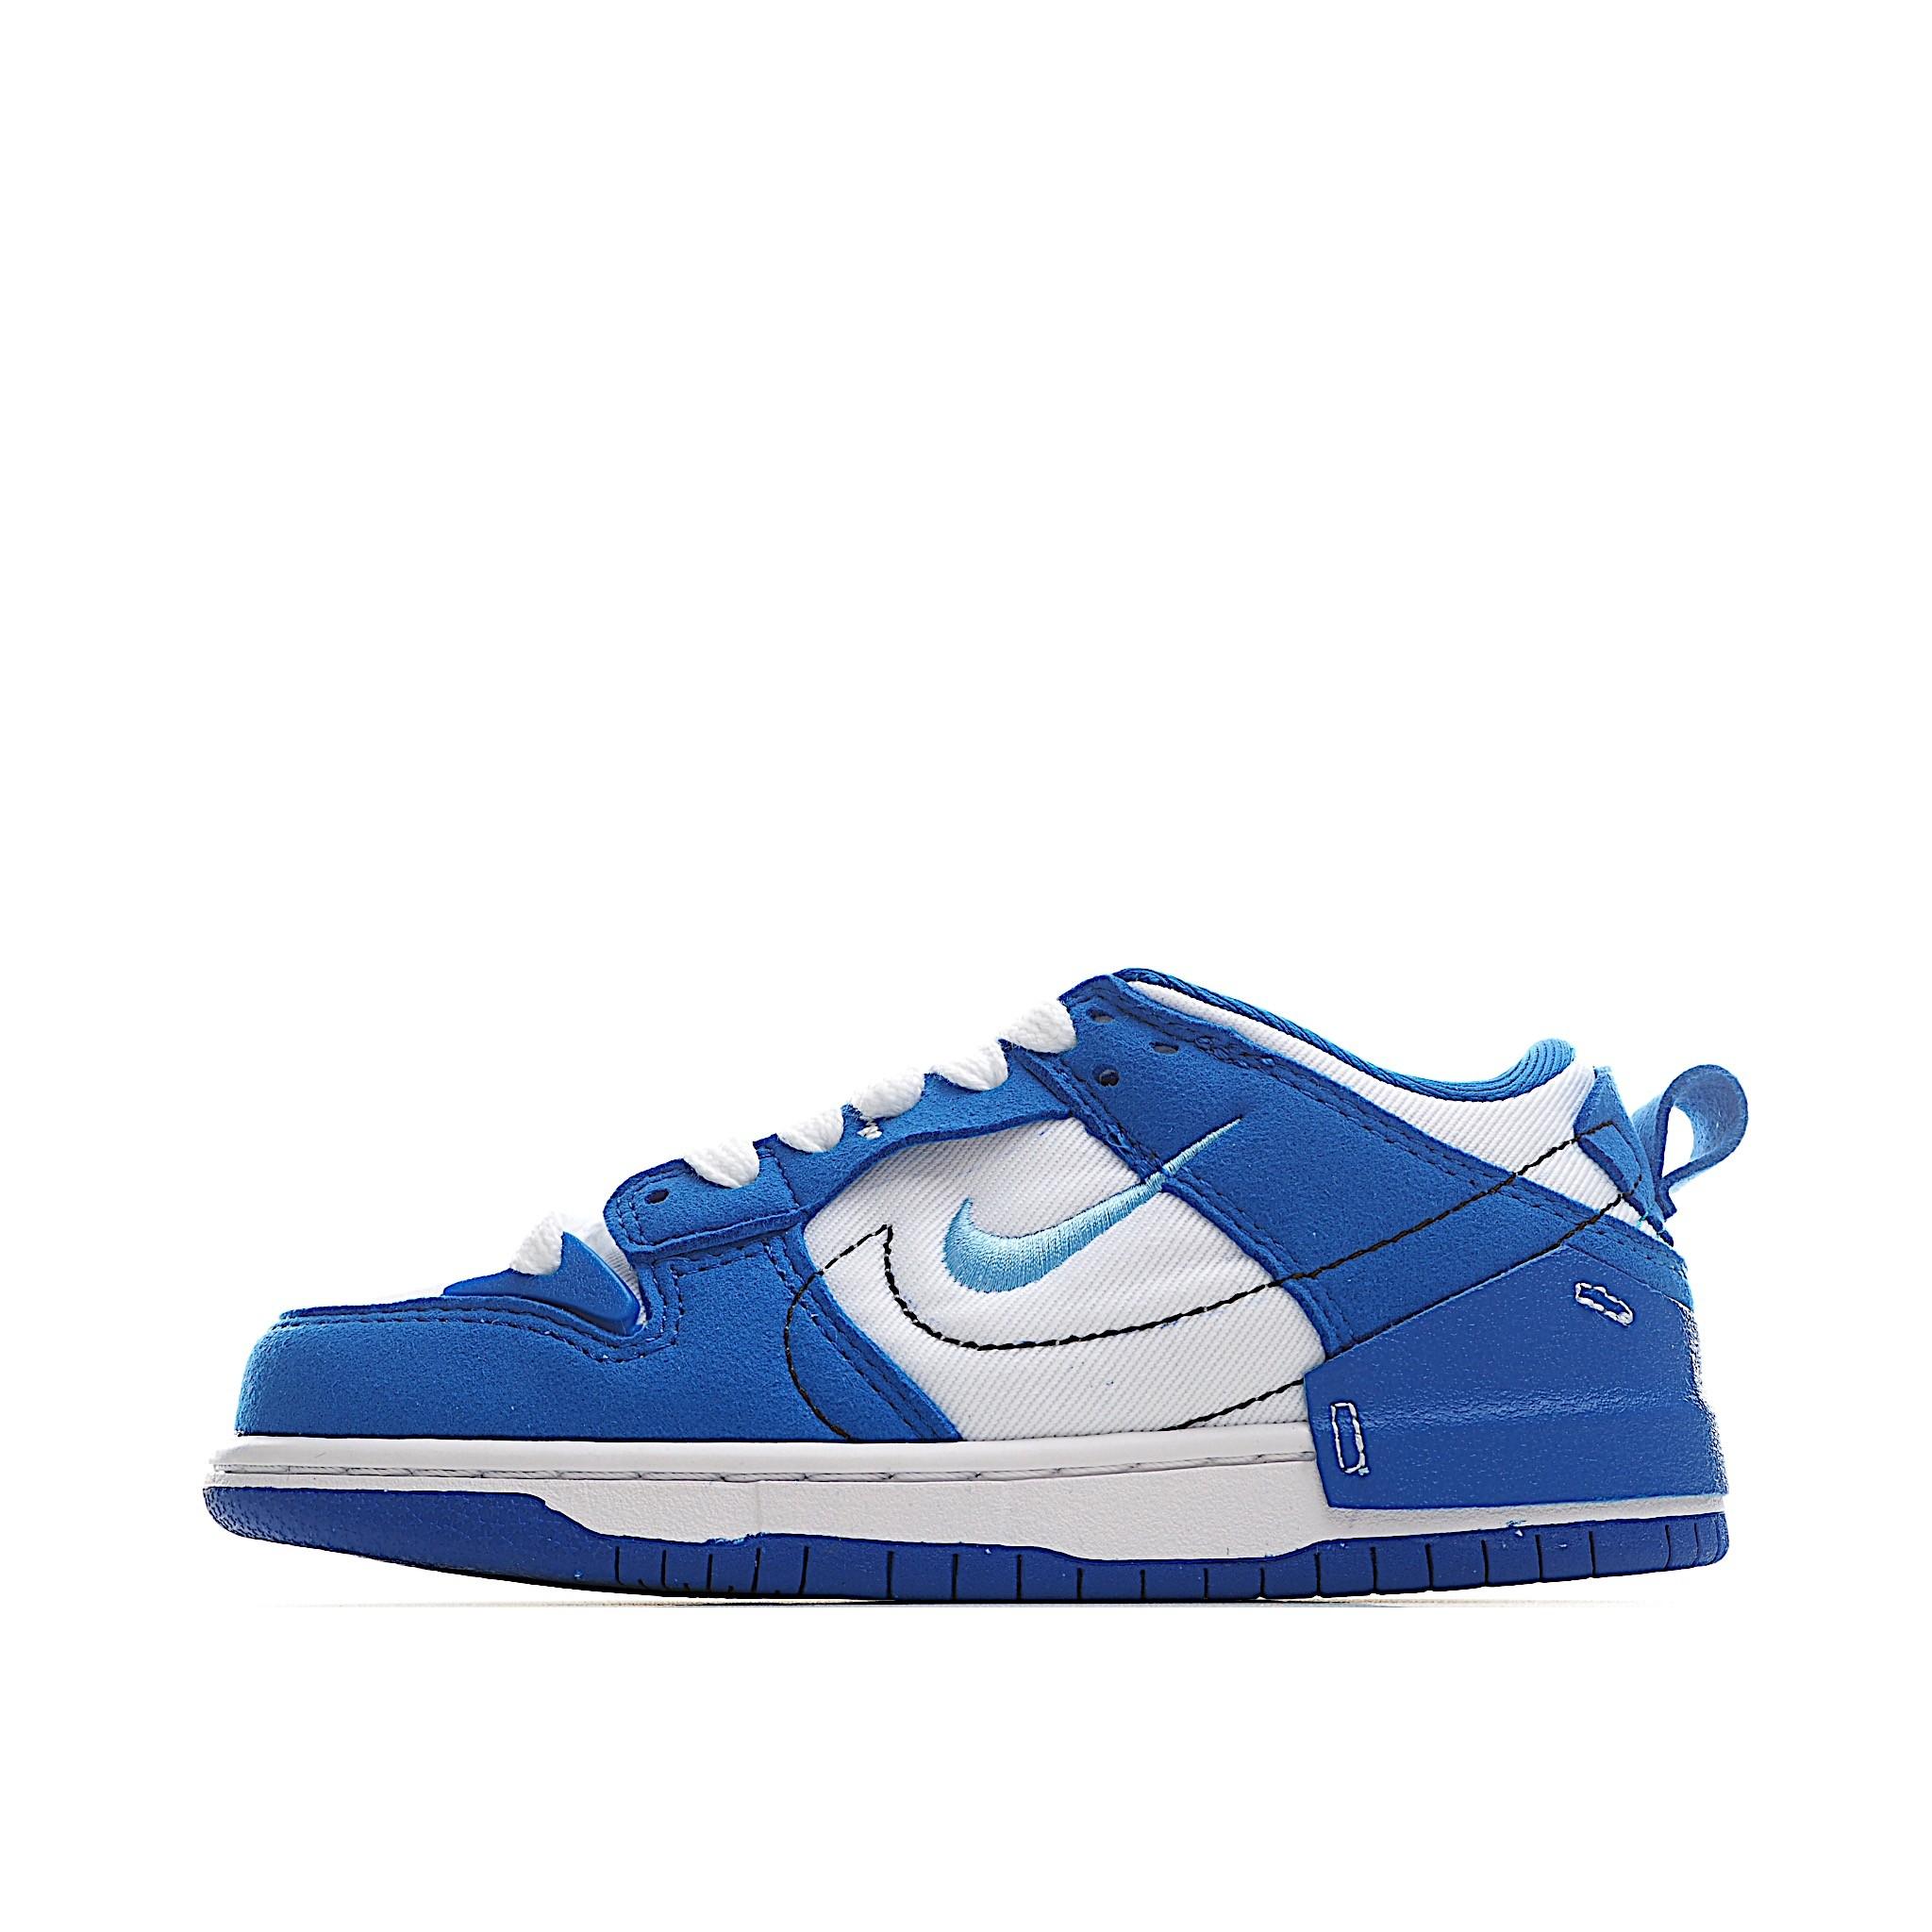 Giày trẻ em Nike Dunk Low Disrupt 2 màu xanh tím than